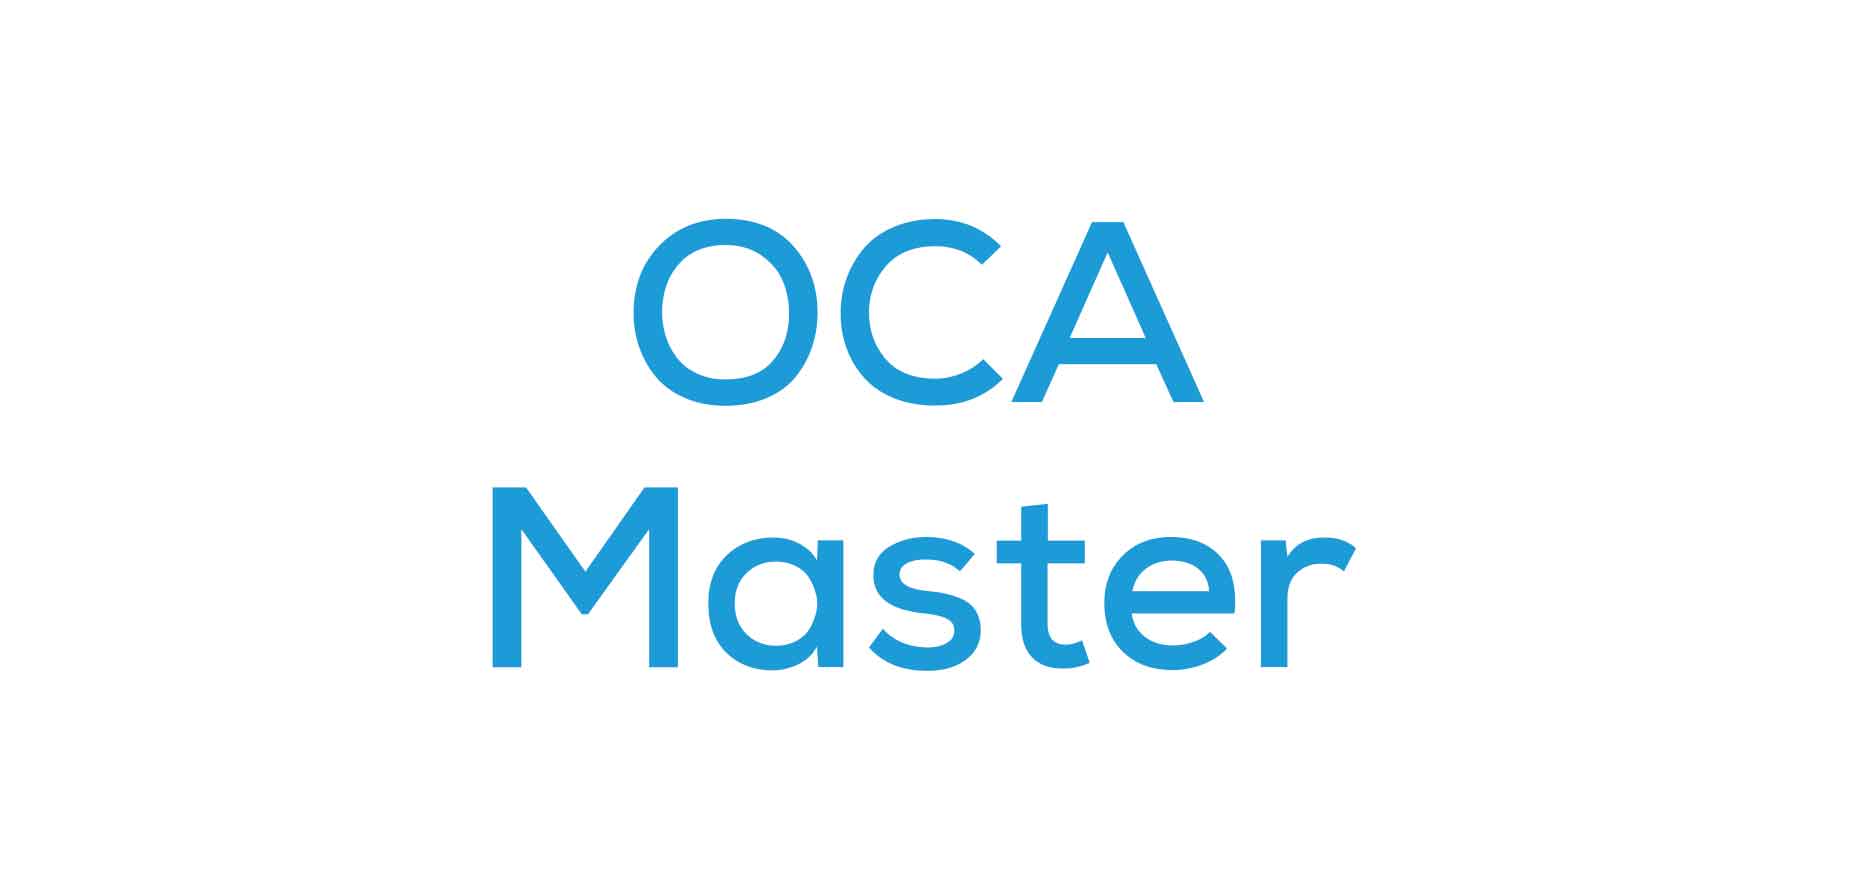 OCA Master